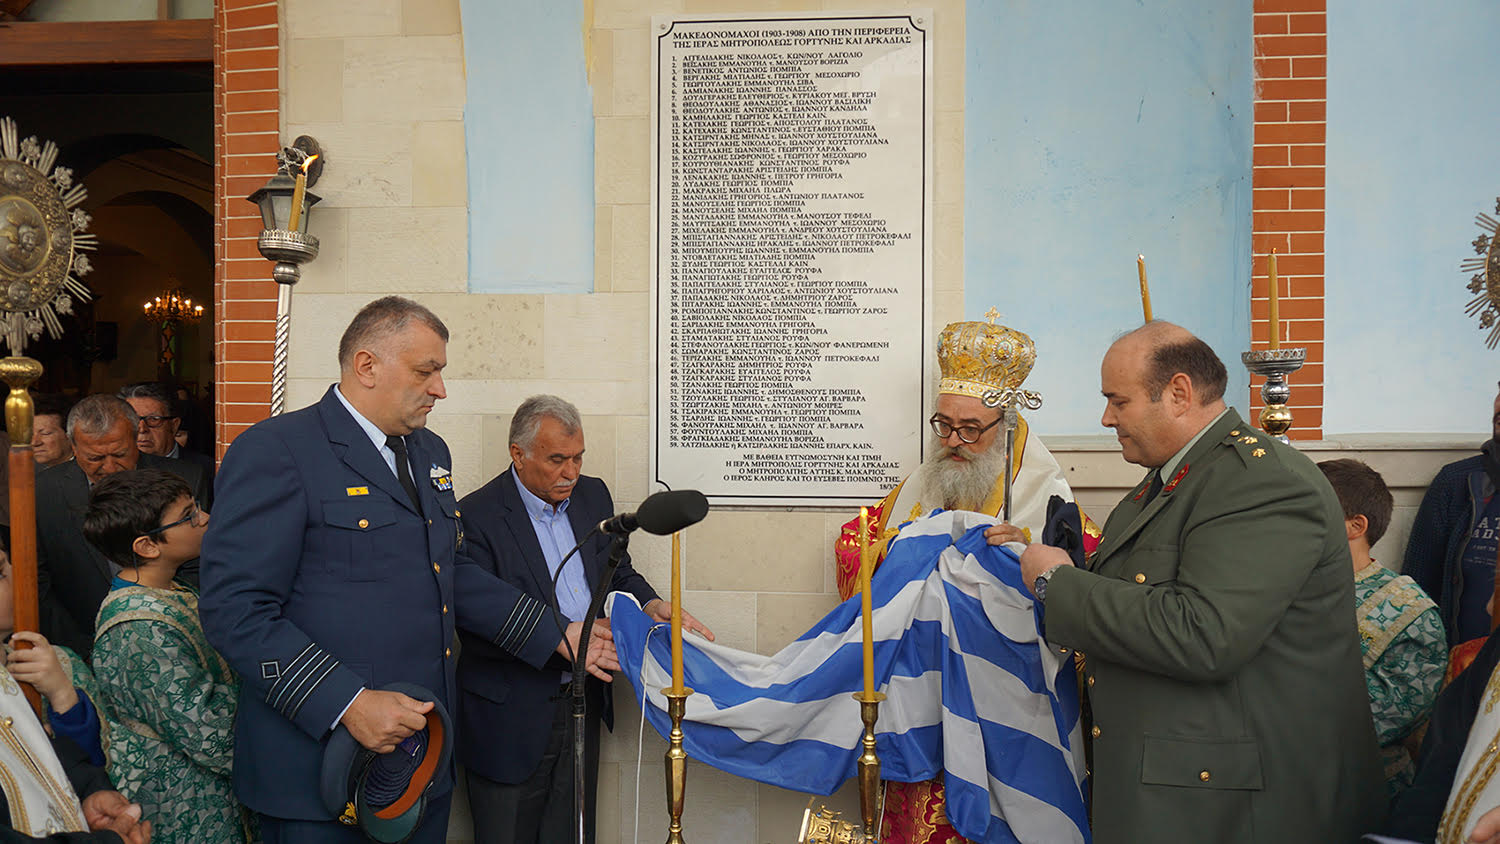 Μία πλάκα τιμής με τα ονόματα των Μεσαριτών Μακεδονομάχων στις Μοίρες